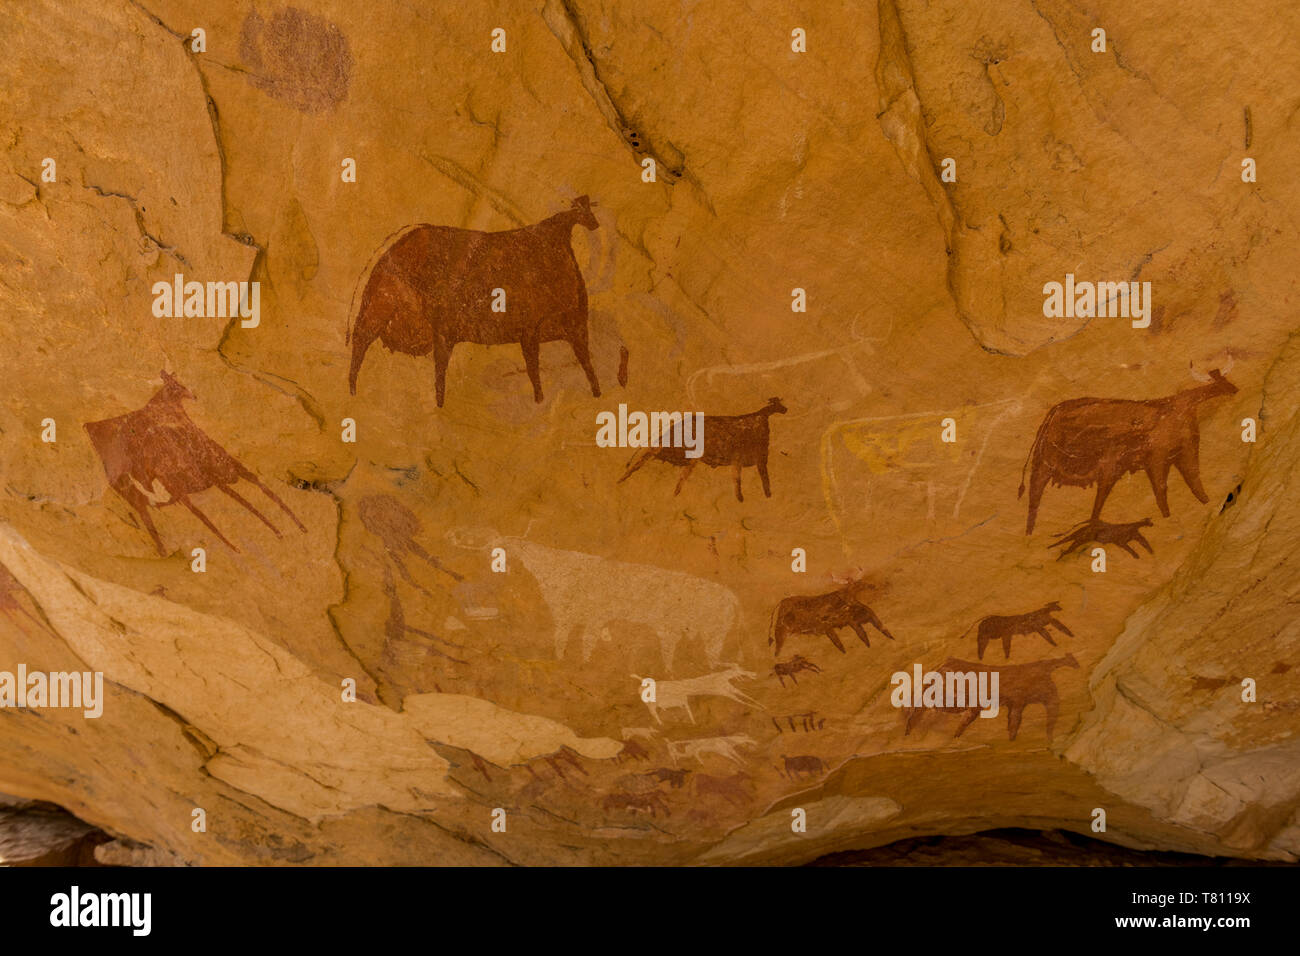 Ennedi Plateau, UNESCO-Weltkulturerbe, Region Ennedi, Tschad, Afrika Stockfoto